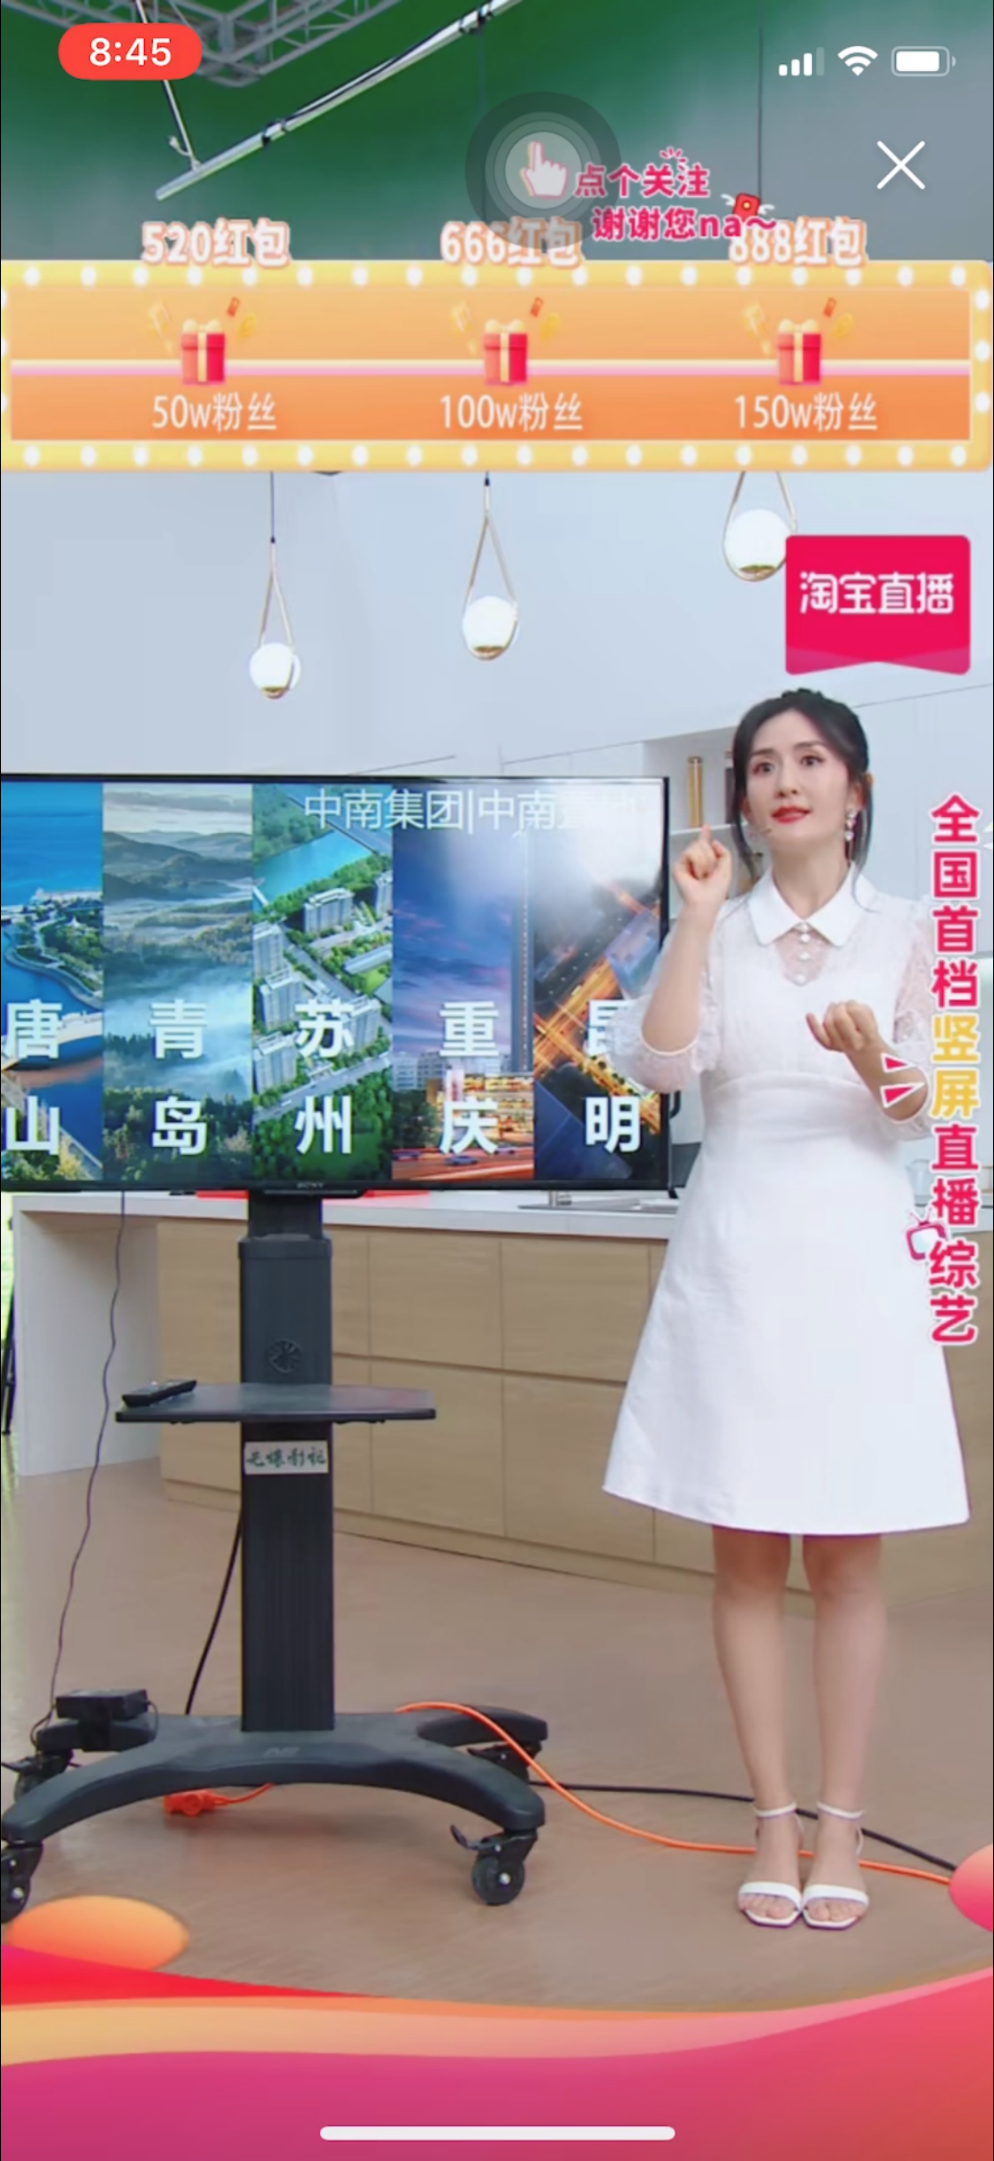 谢娜直播首秀GMV预估破亿 20分钟为中南置地卖出72套房 -中国网地产